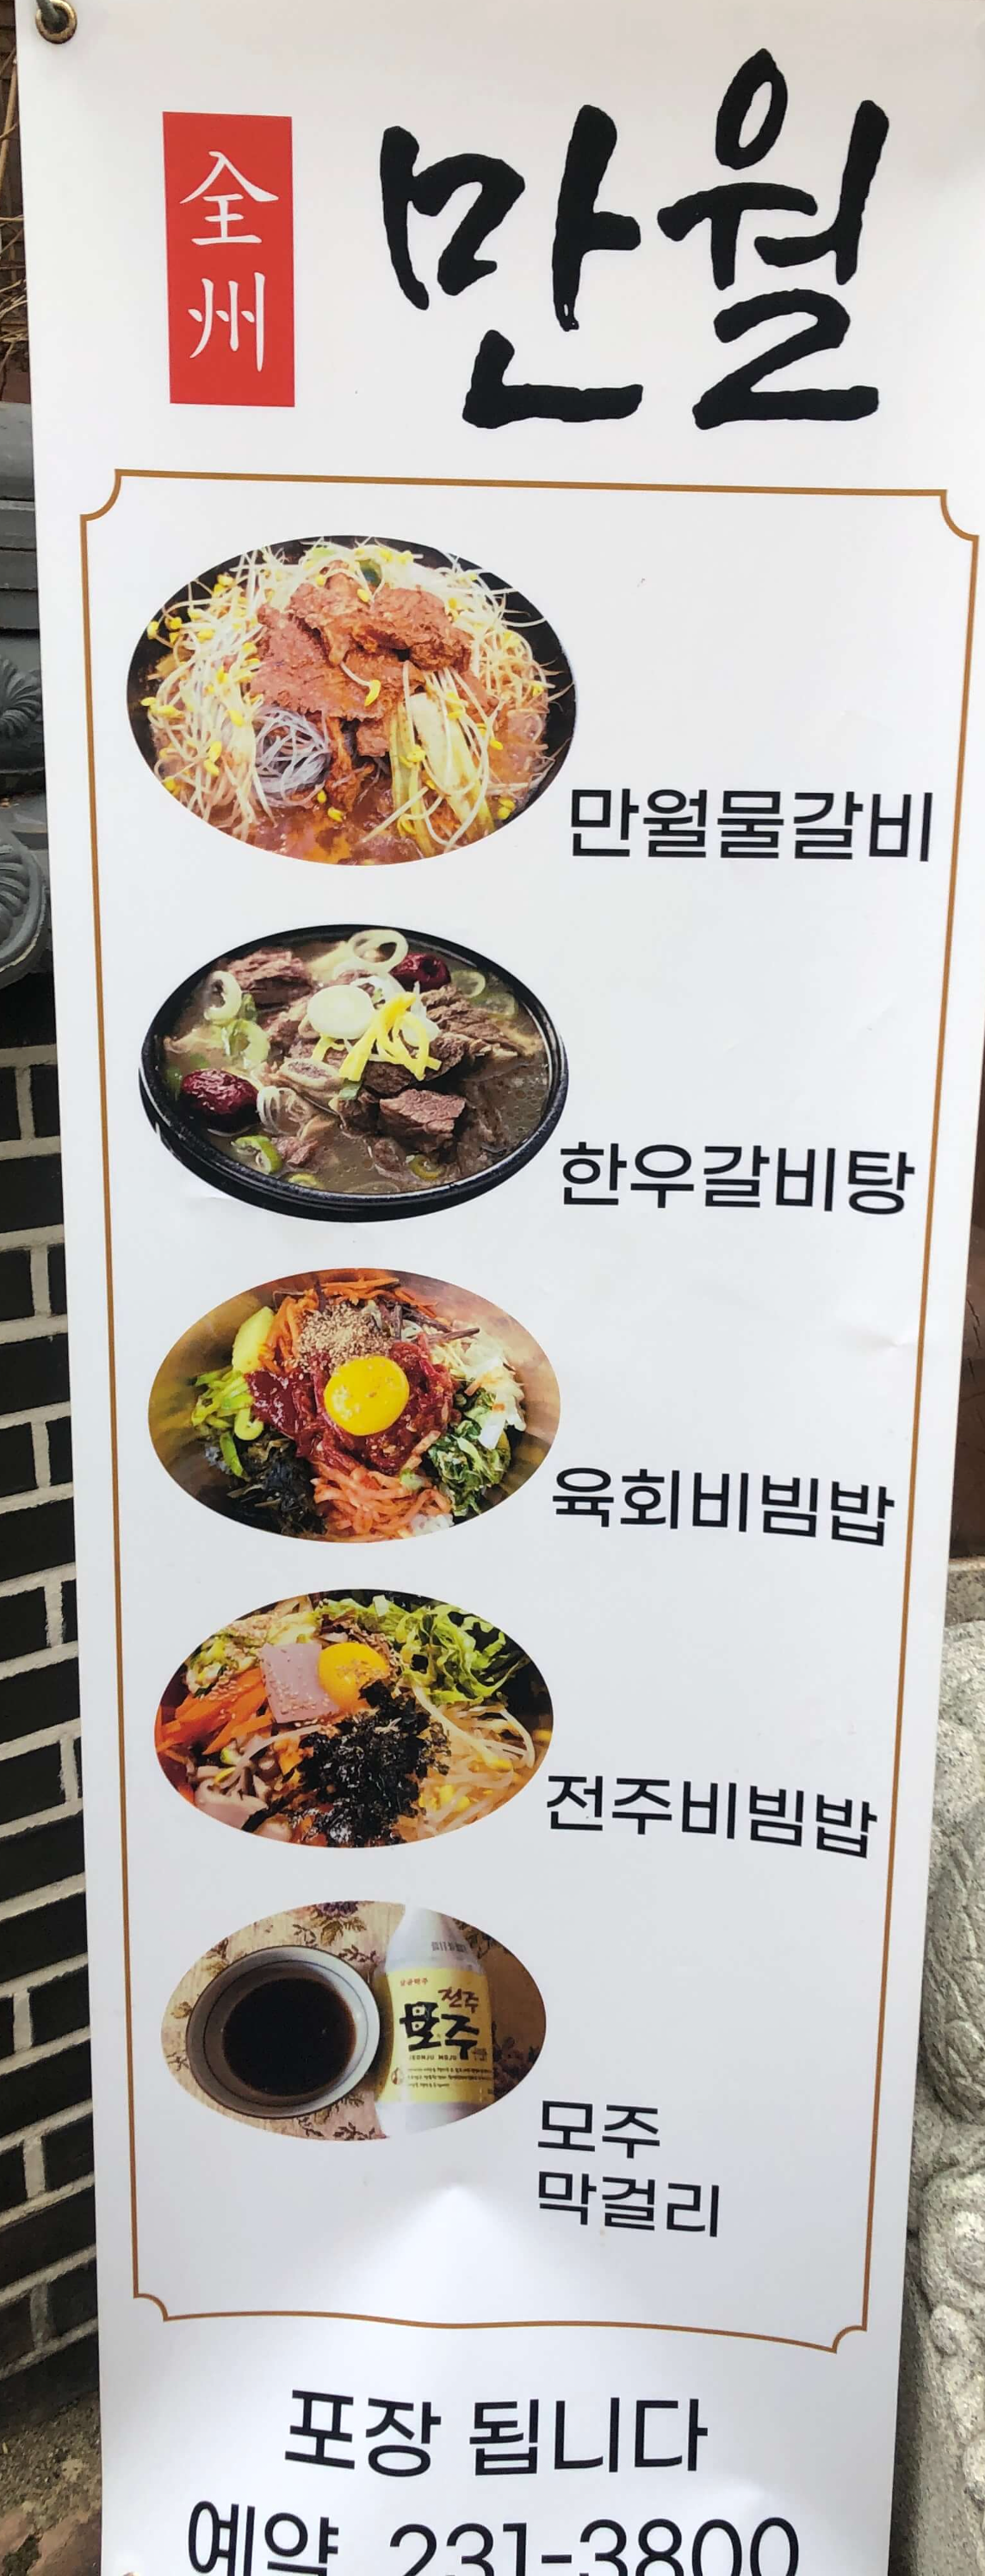 민수랜드-전주만월 메뉴2